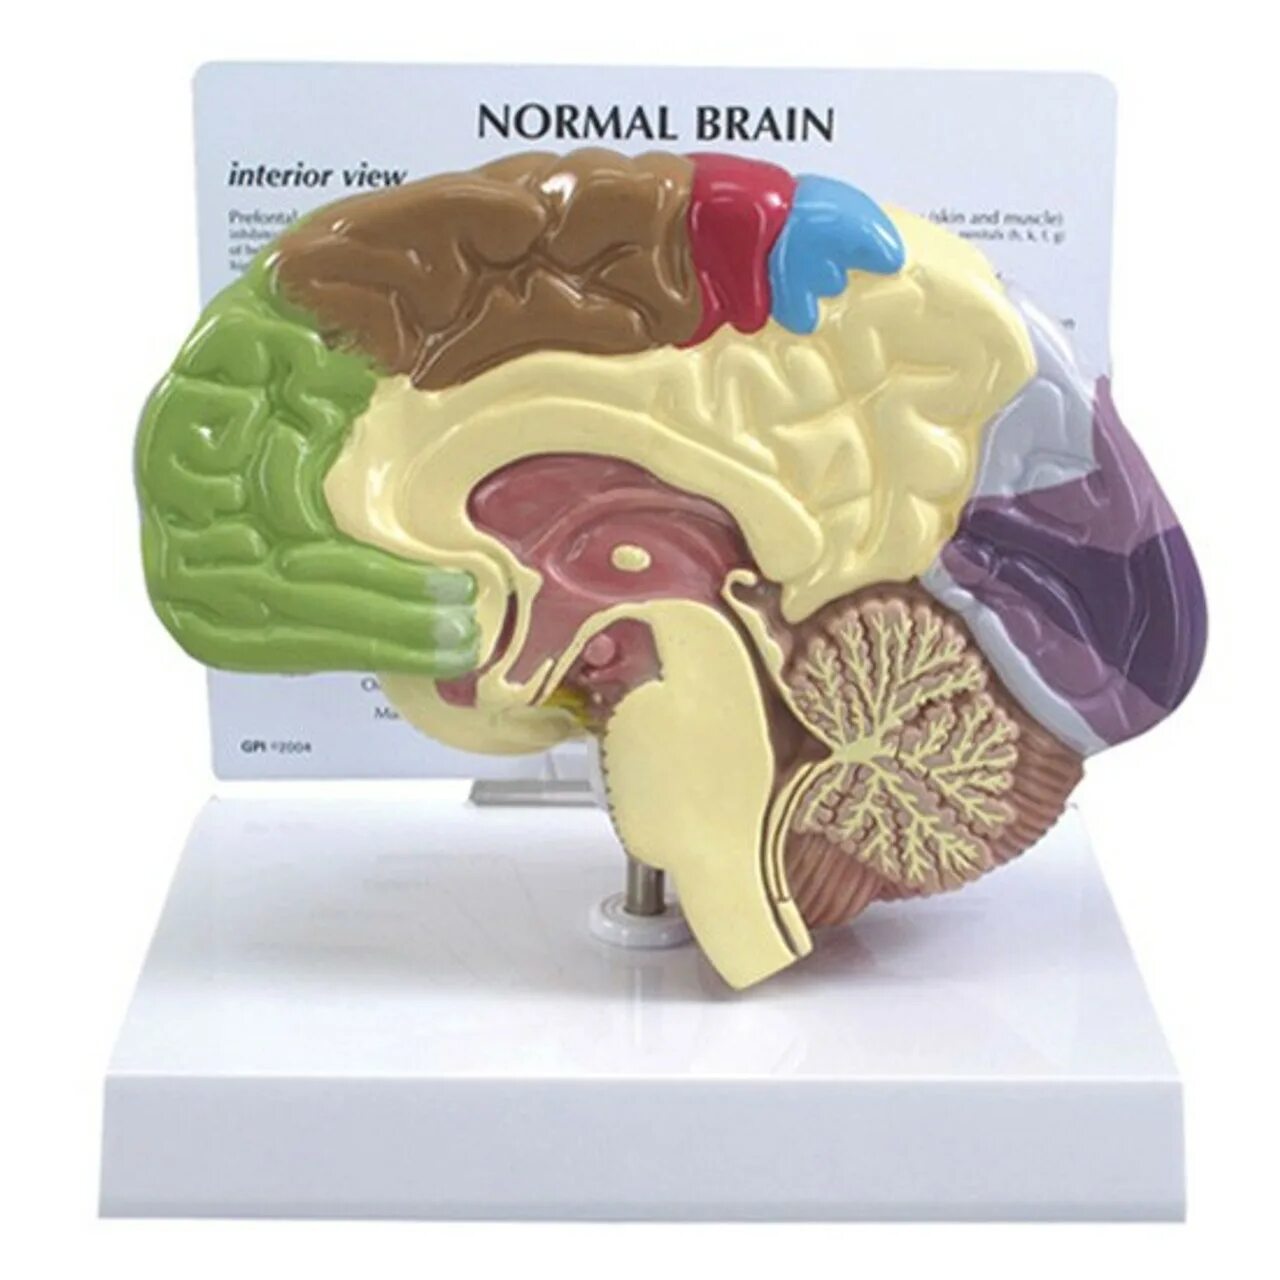 1 brain for 2. Муляж мозга. Анатомическая модель мозга. Макет головного мозга. Муляж головного мозга человека.